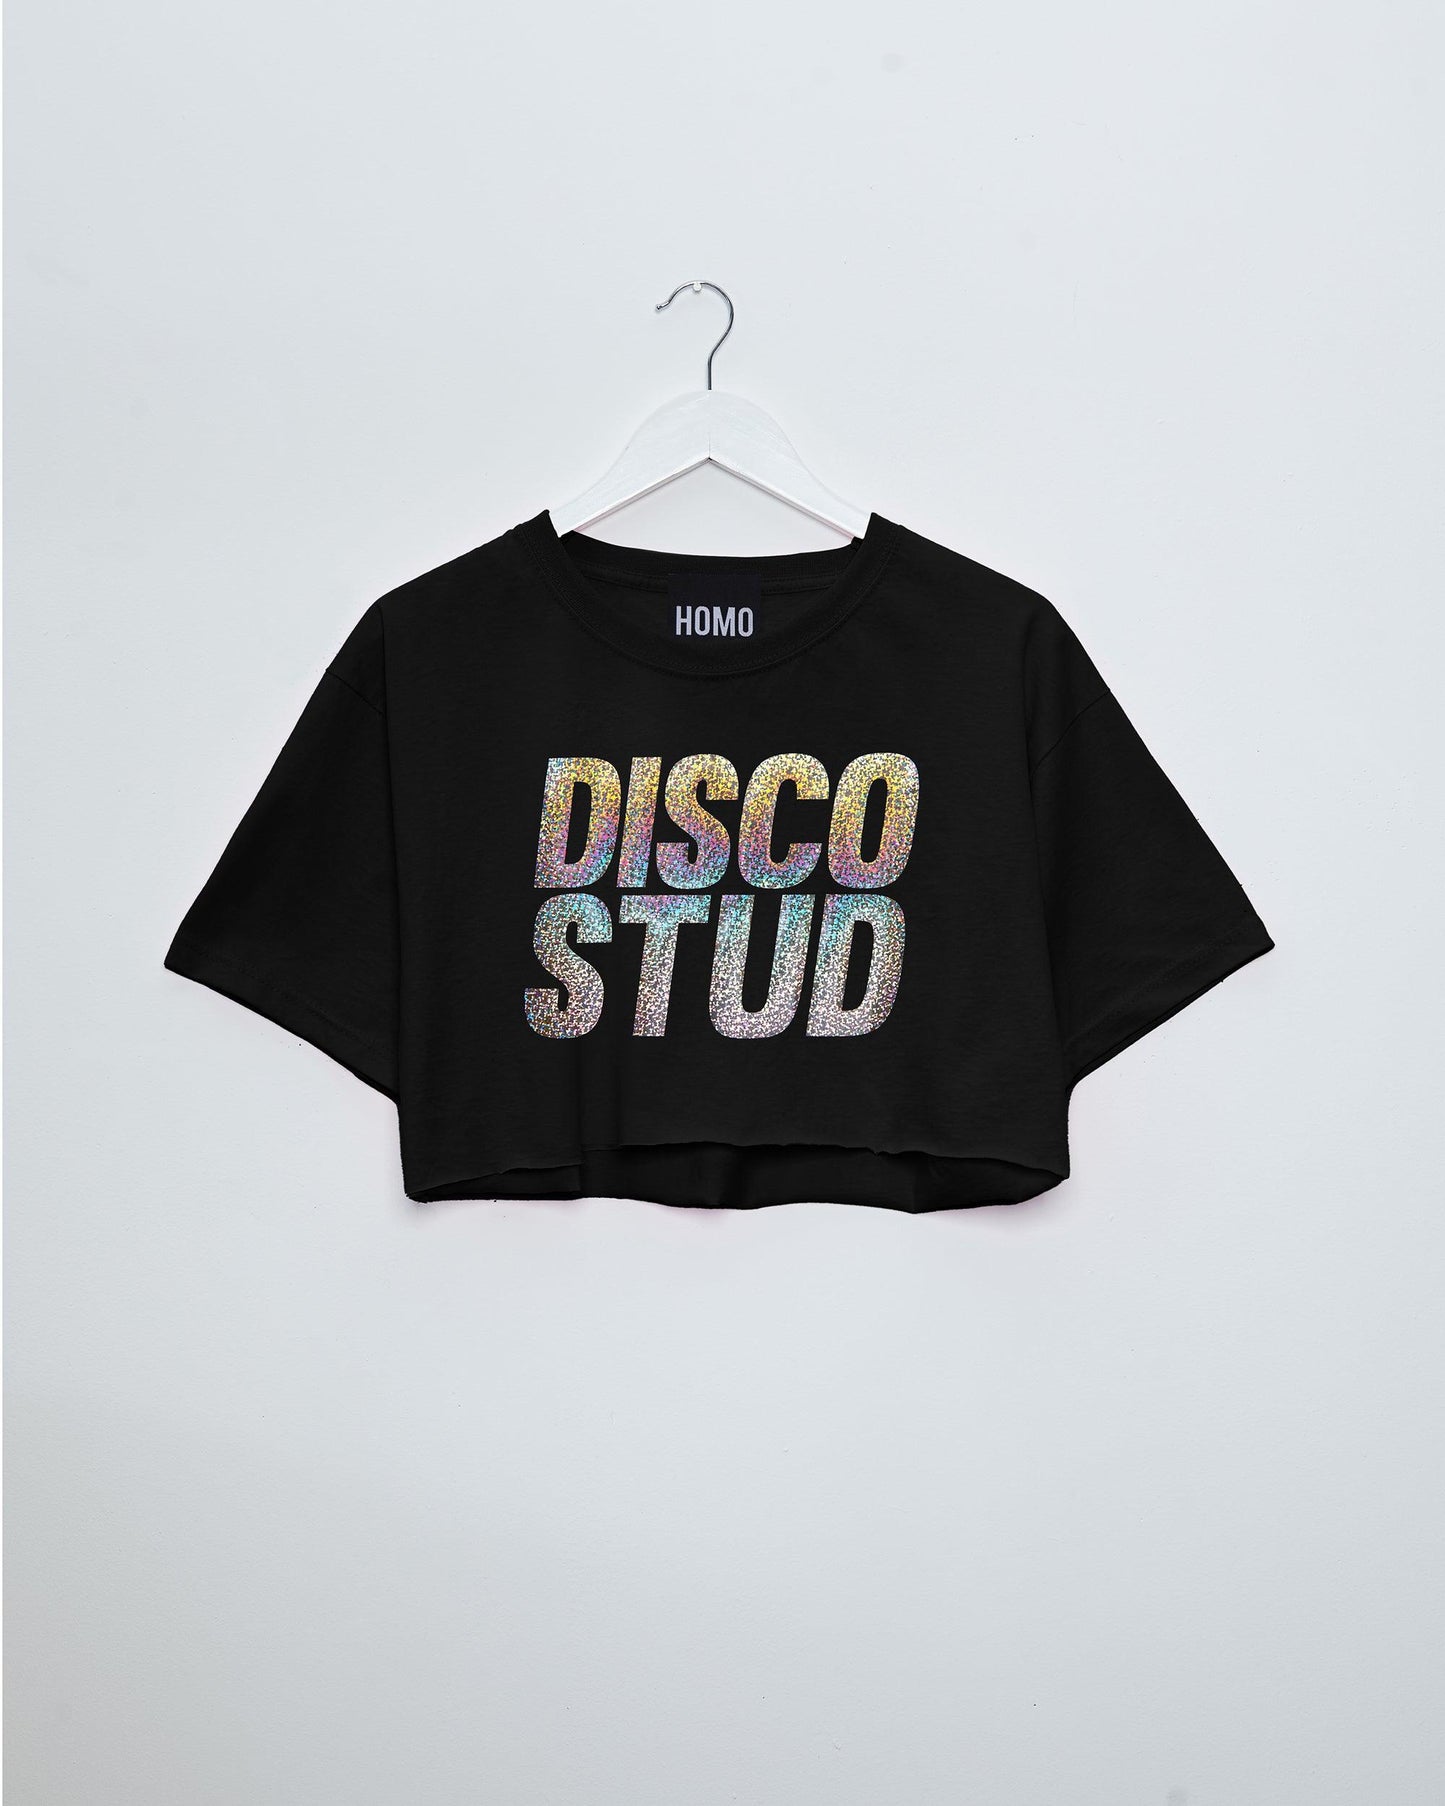 Disco stud, hologram sparkle on black - crop top.